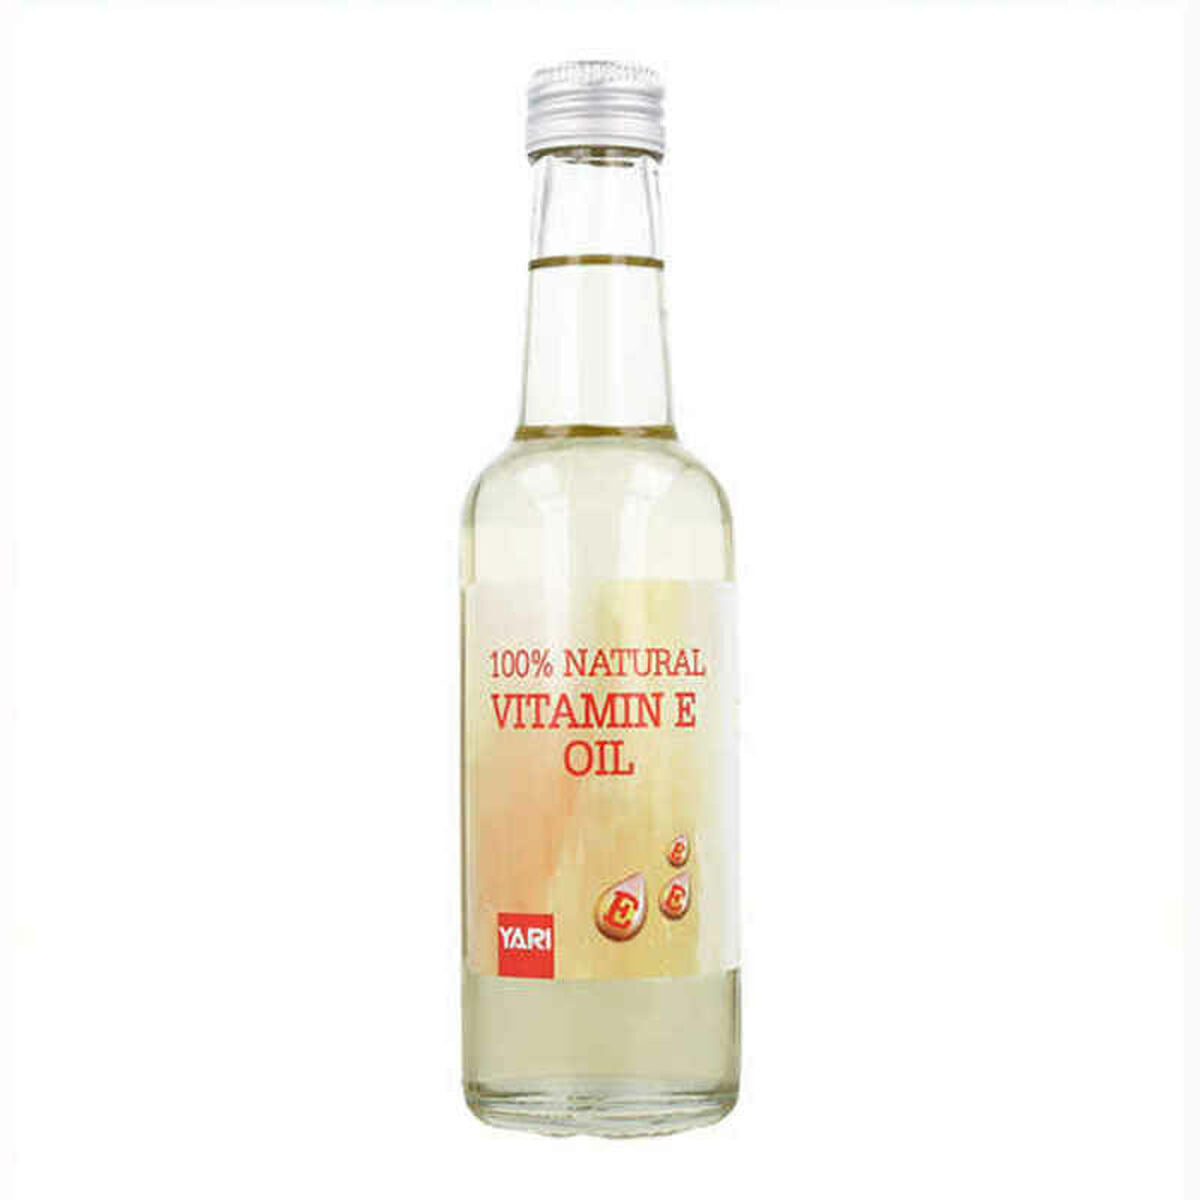 Moisturising Oil Yari Natural E Vitamin E 250 ml